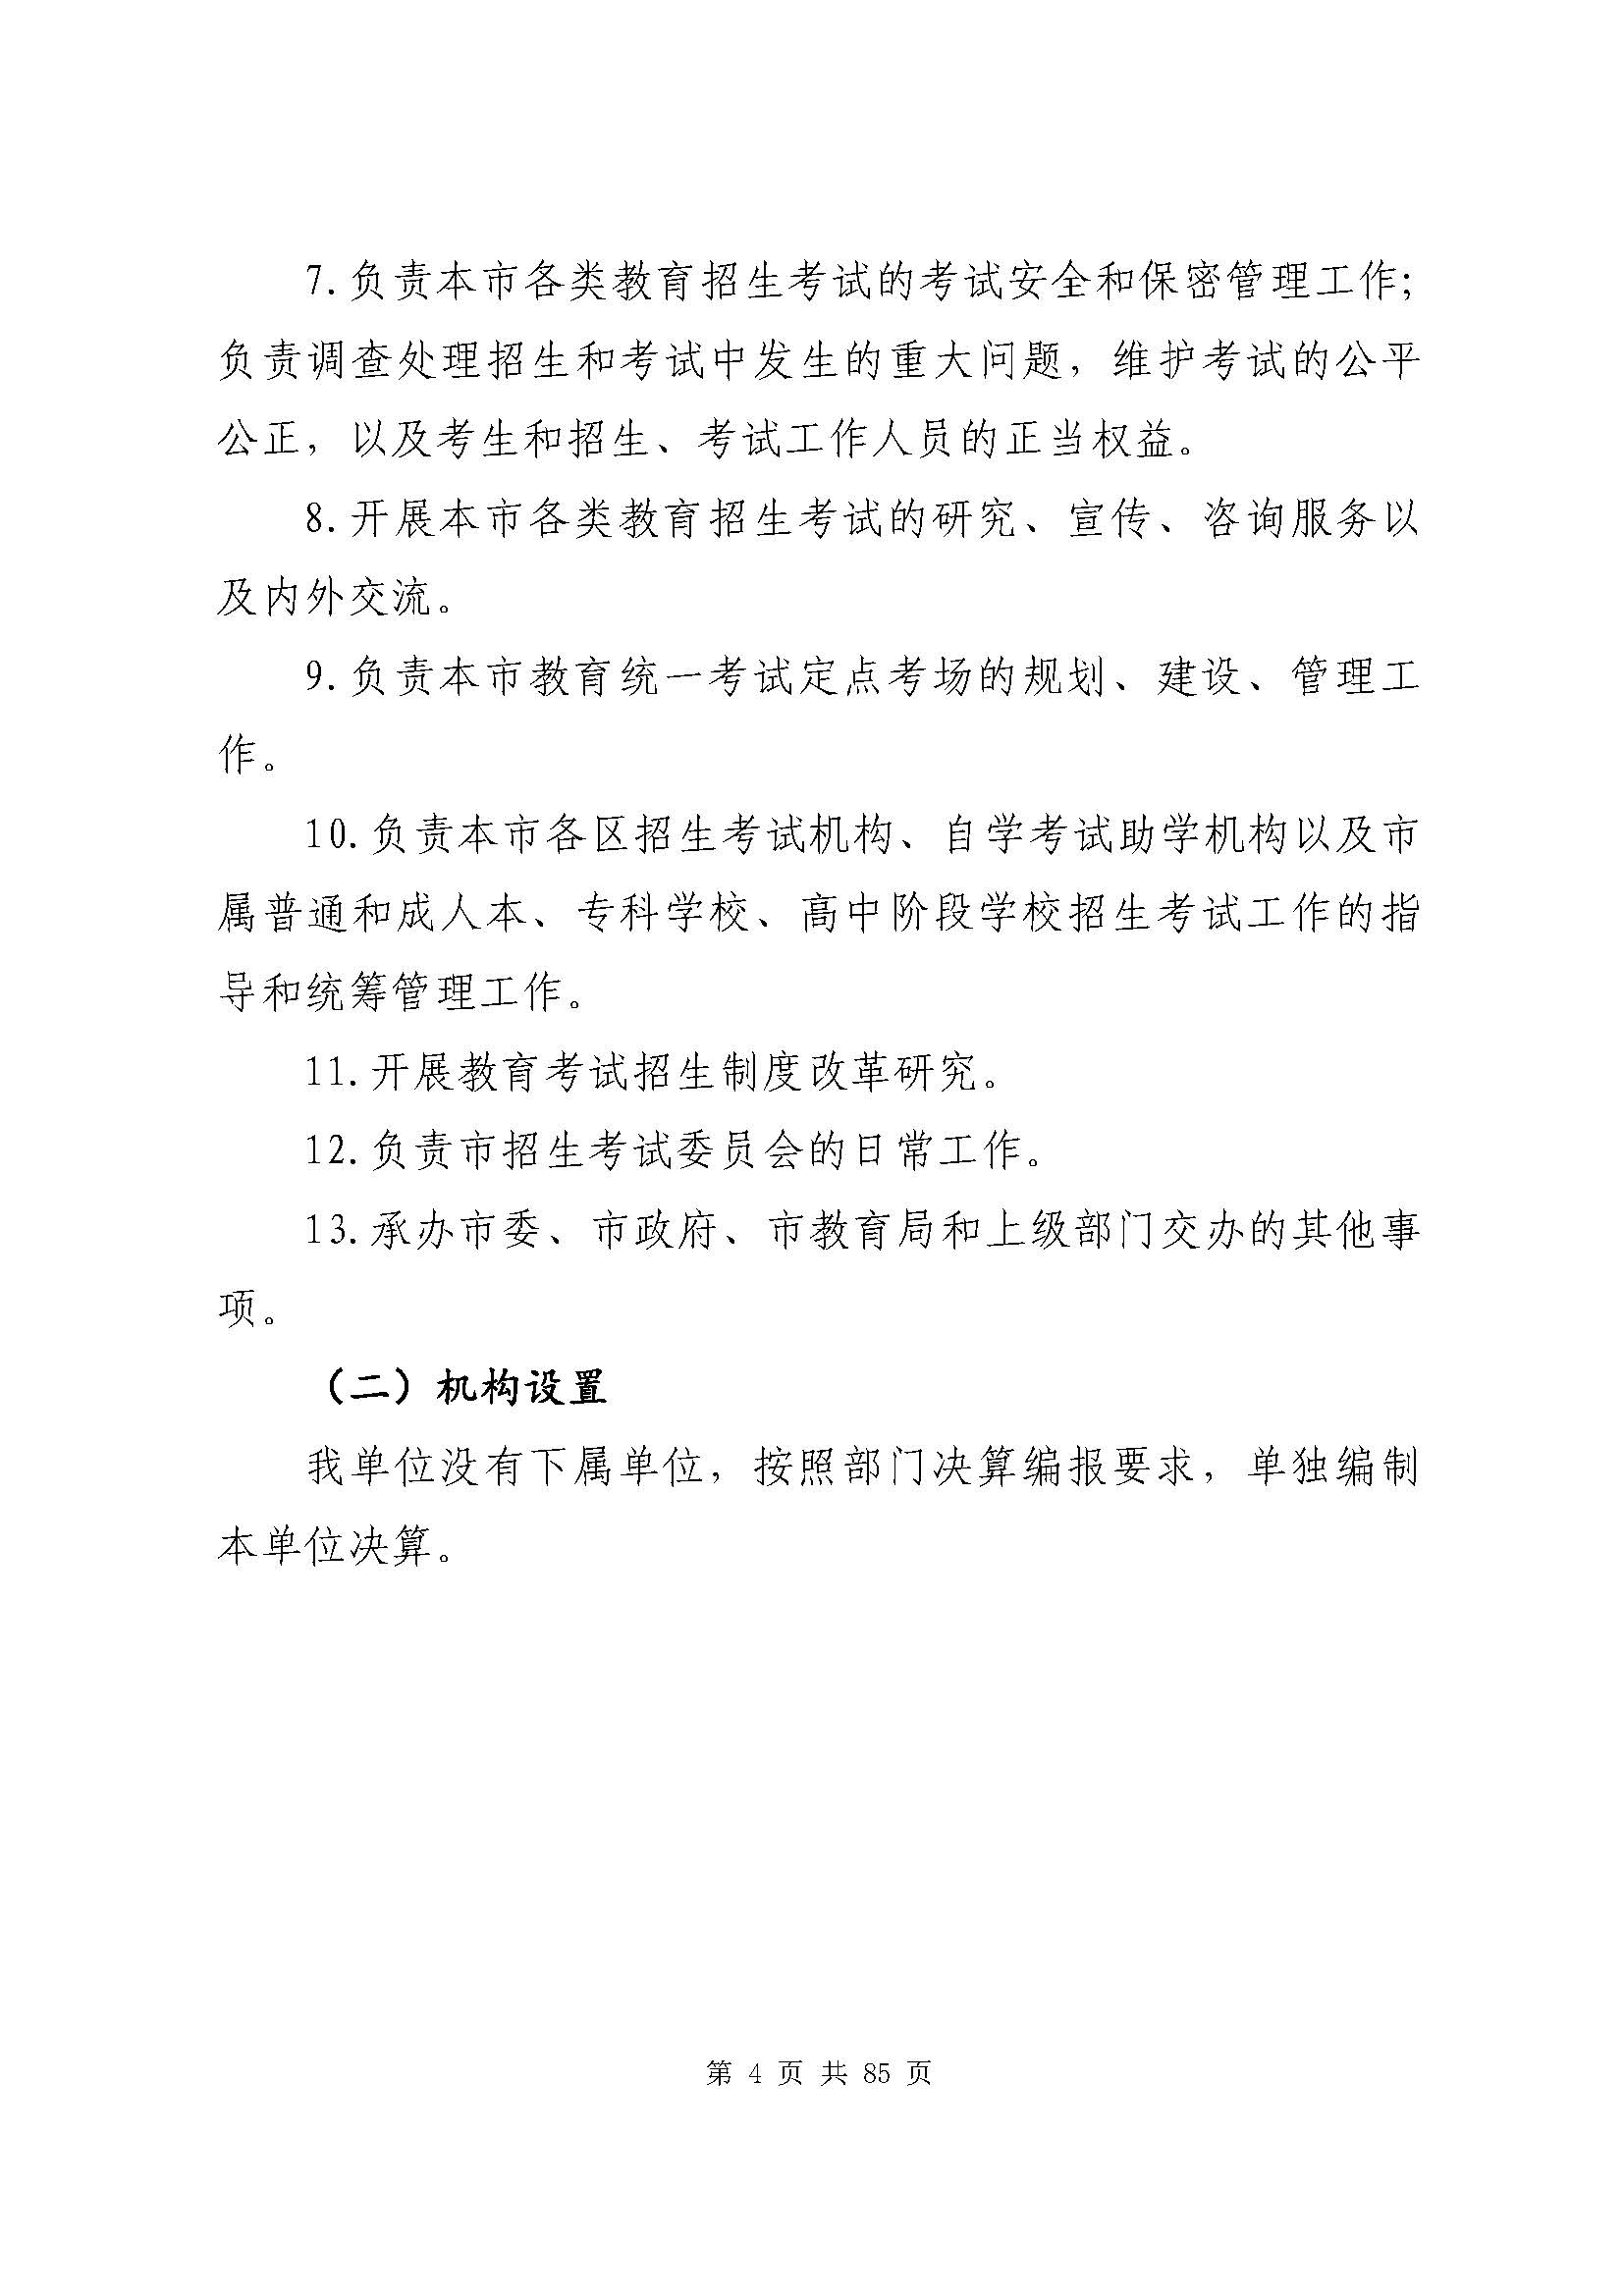 深圳市招生考试办公室2020年度部门决算_页面_05.jpg